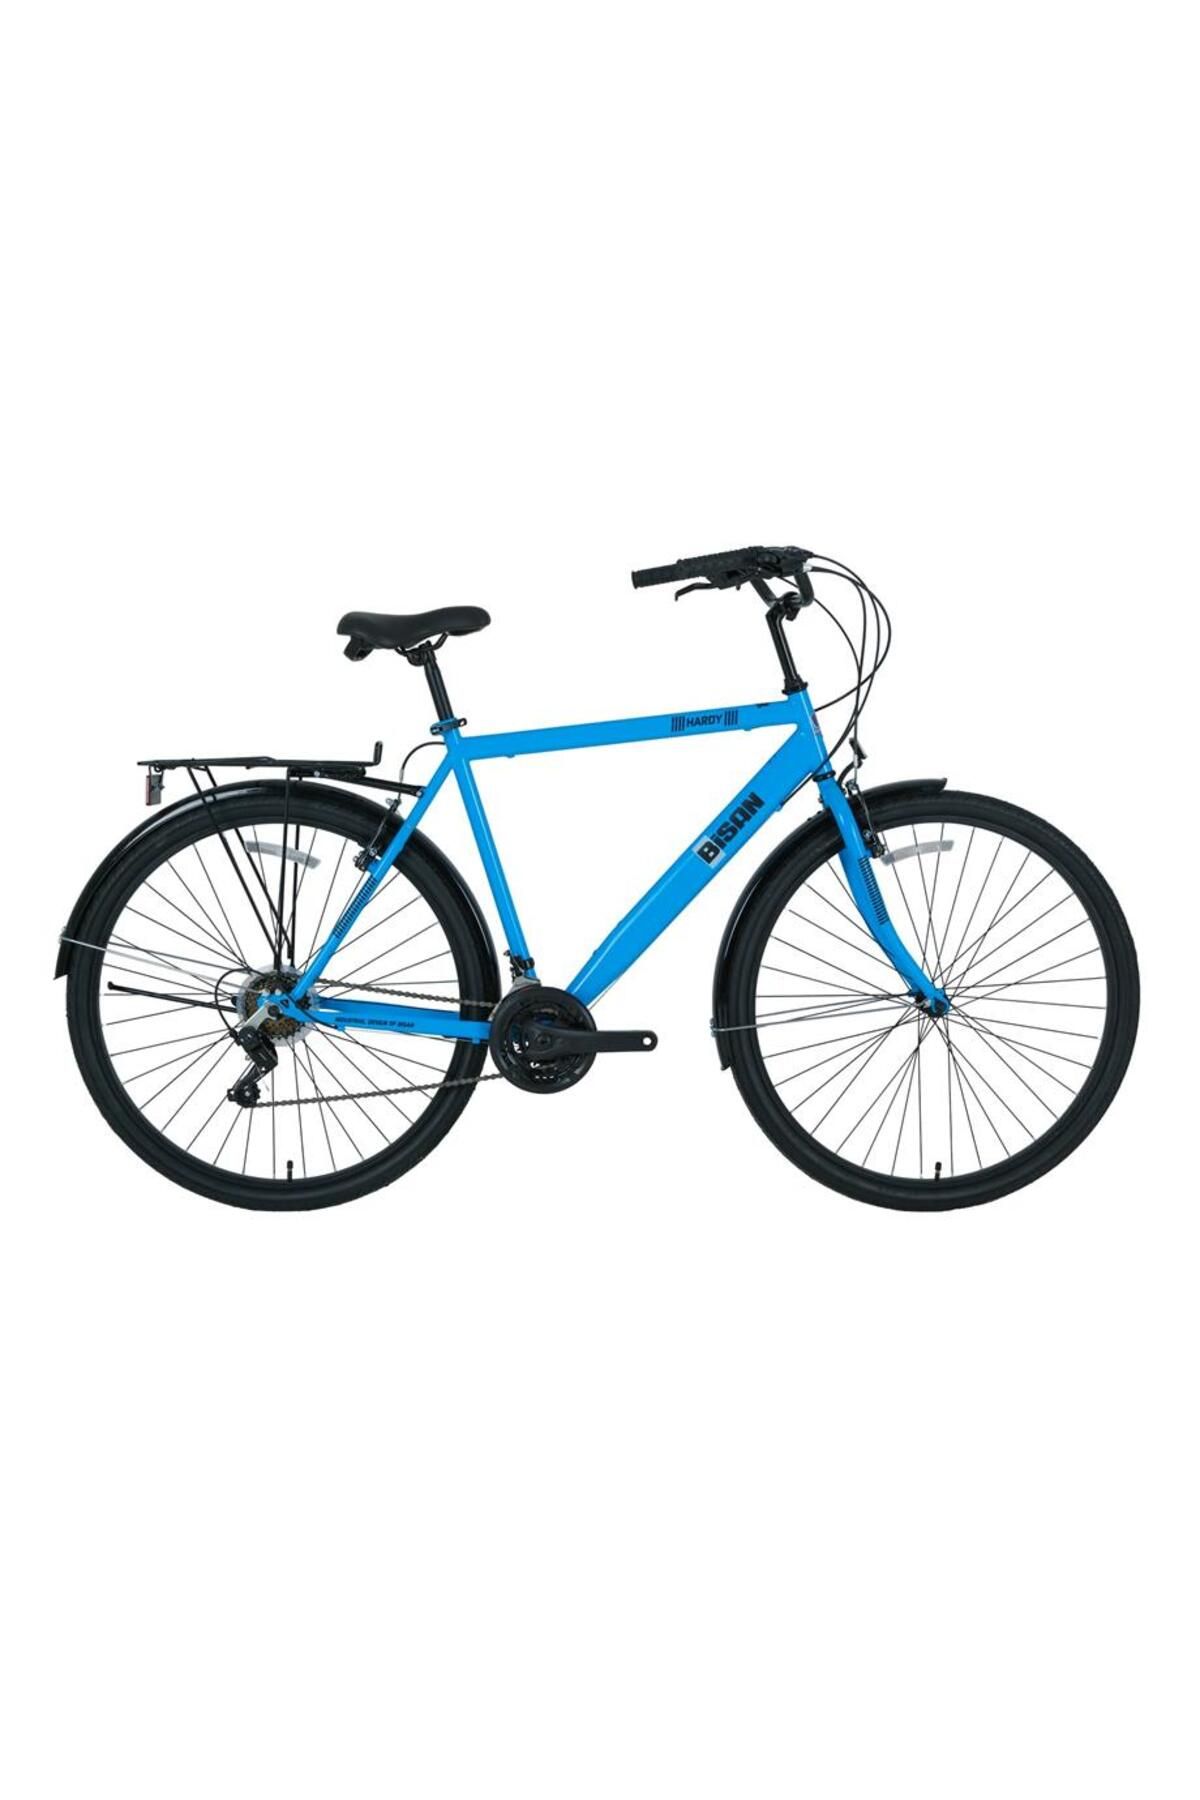 Bisan Hardy-s Erkek Şehir Bisikleti 56cm V 28 Jant 21 Vites Mavi Siyah